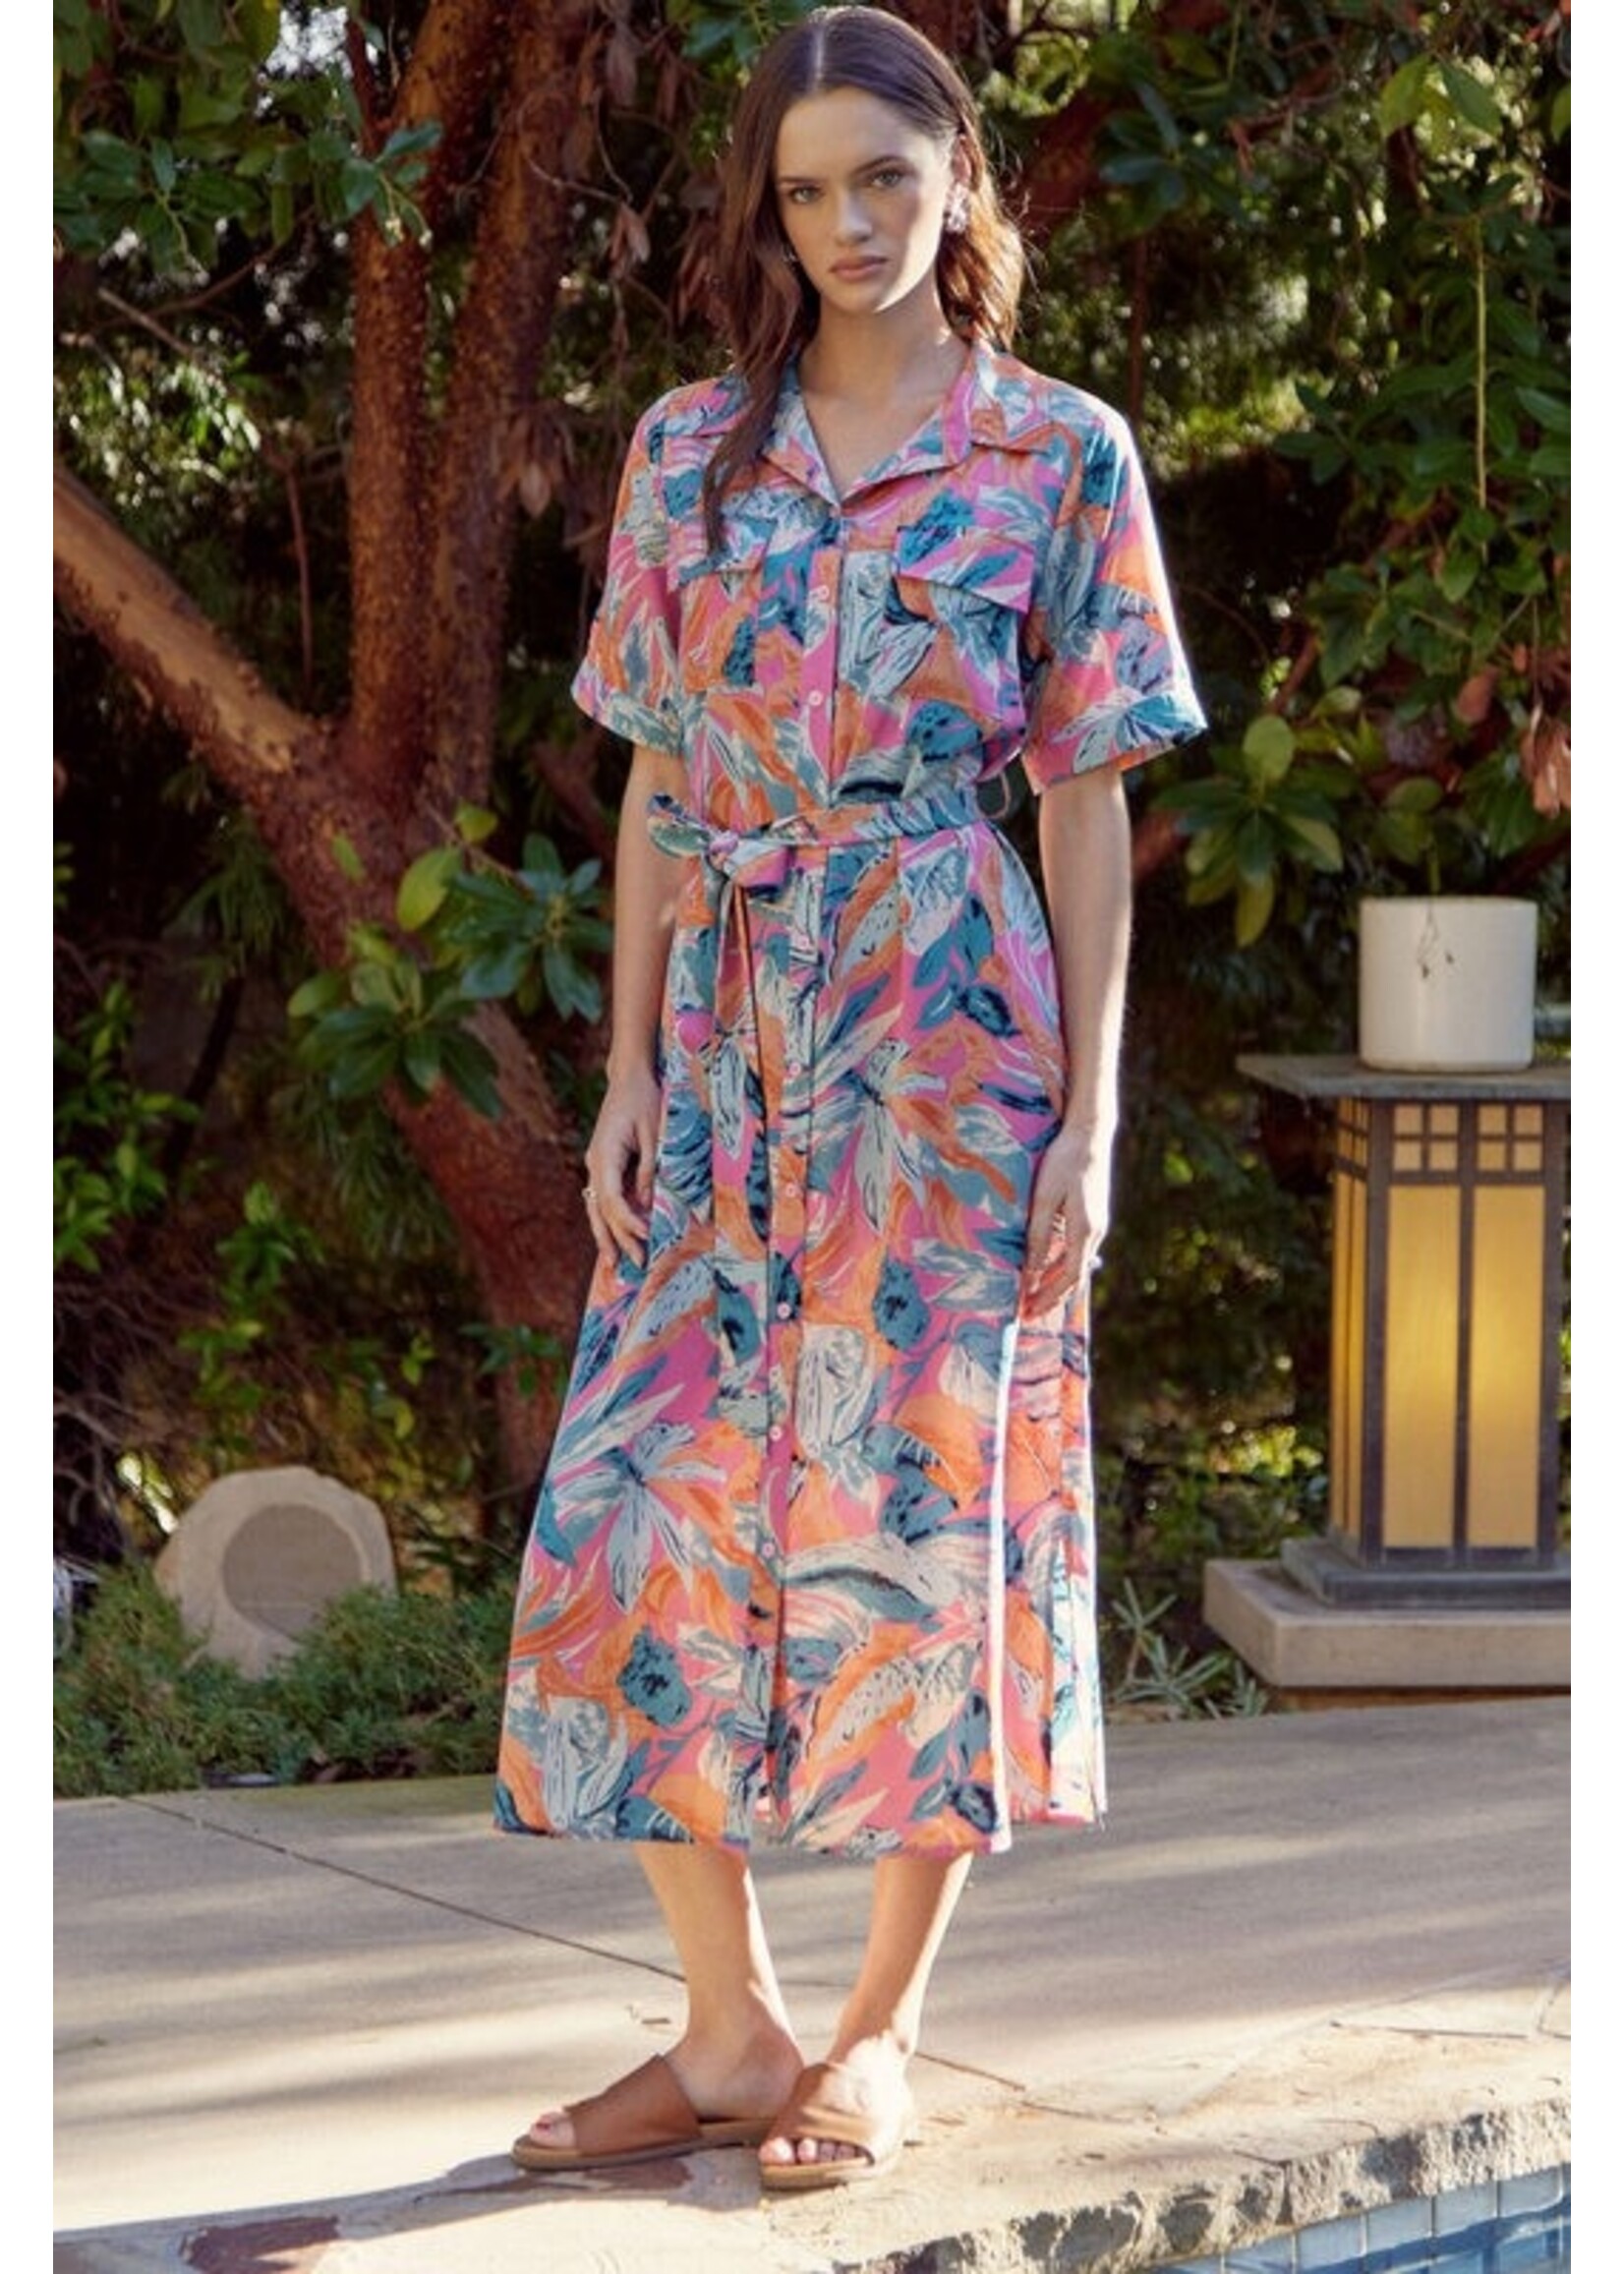 Jodifl Tropical Print Midi Dress with Belt